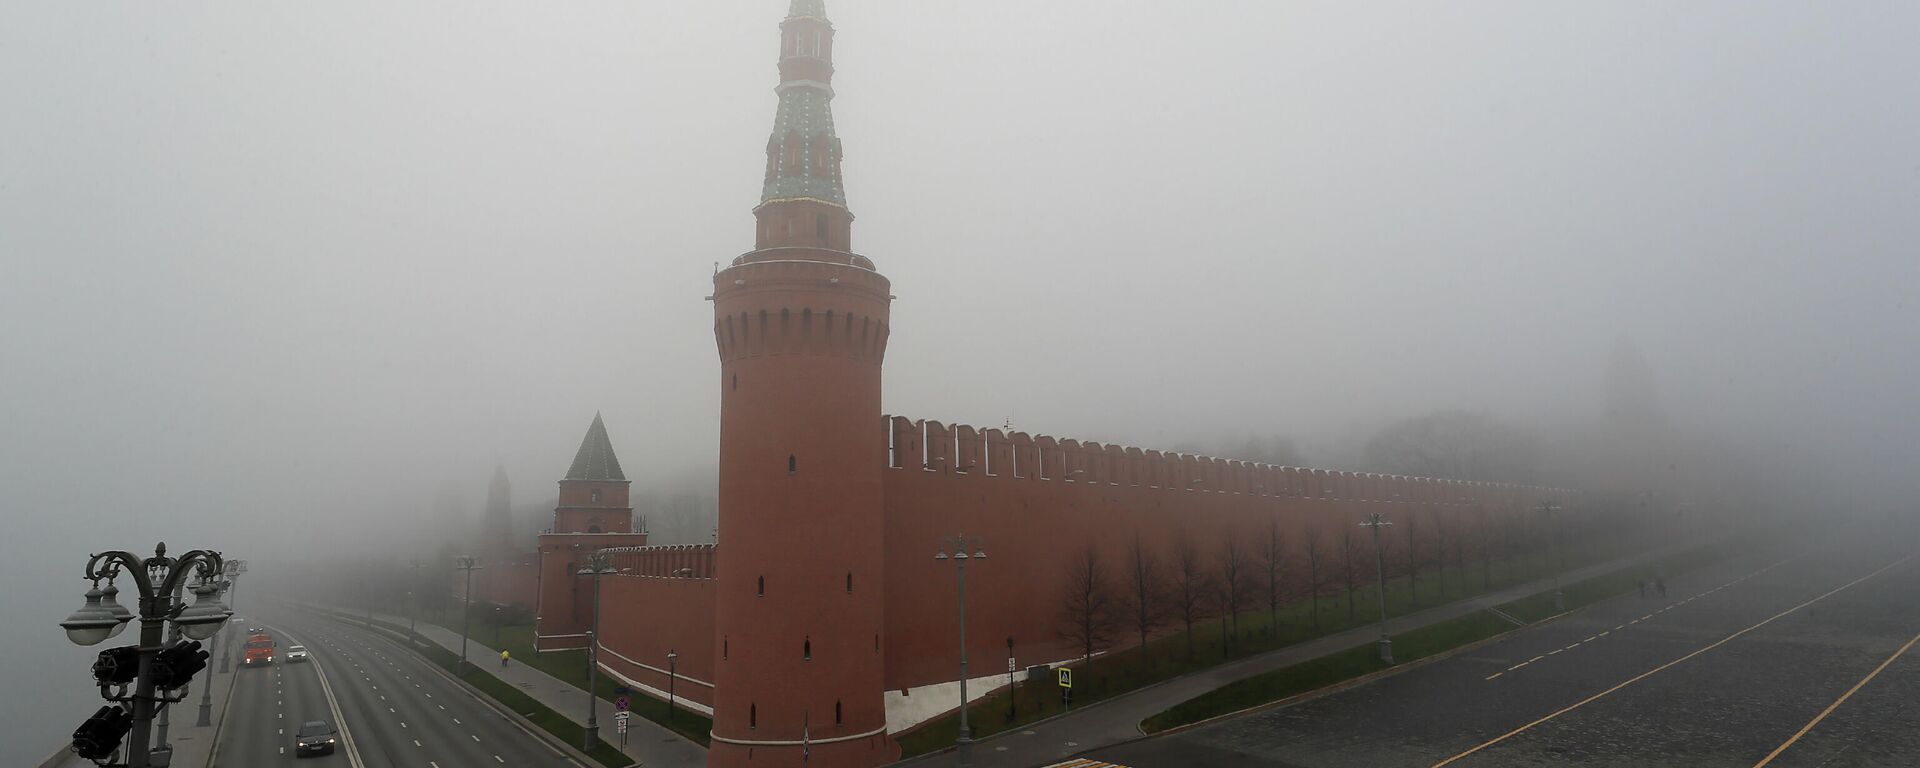 The Kremlin covered in dense fog - Sputnik International, 1920, 25.11.2021